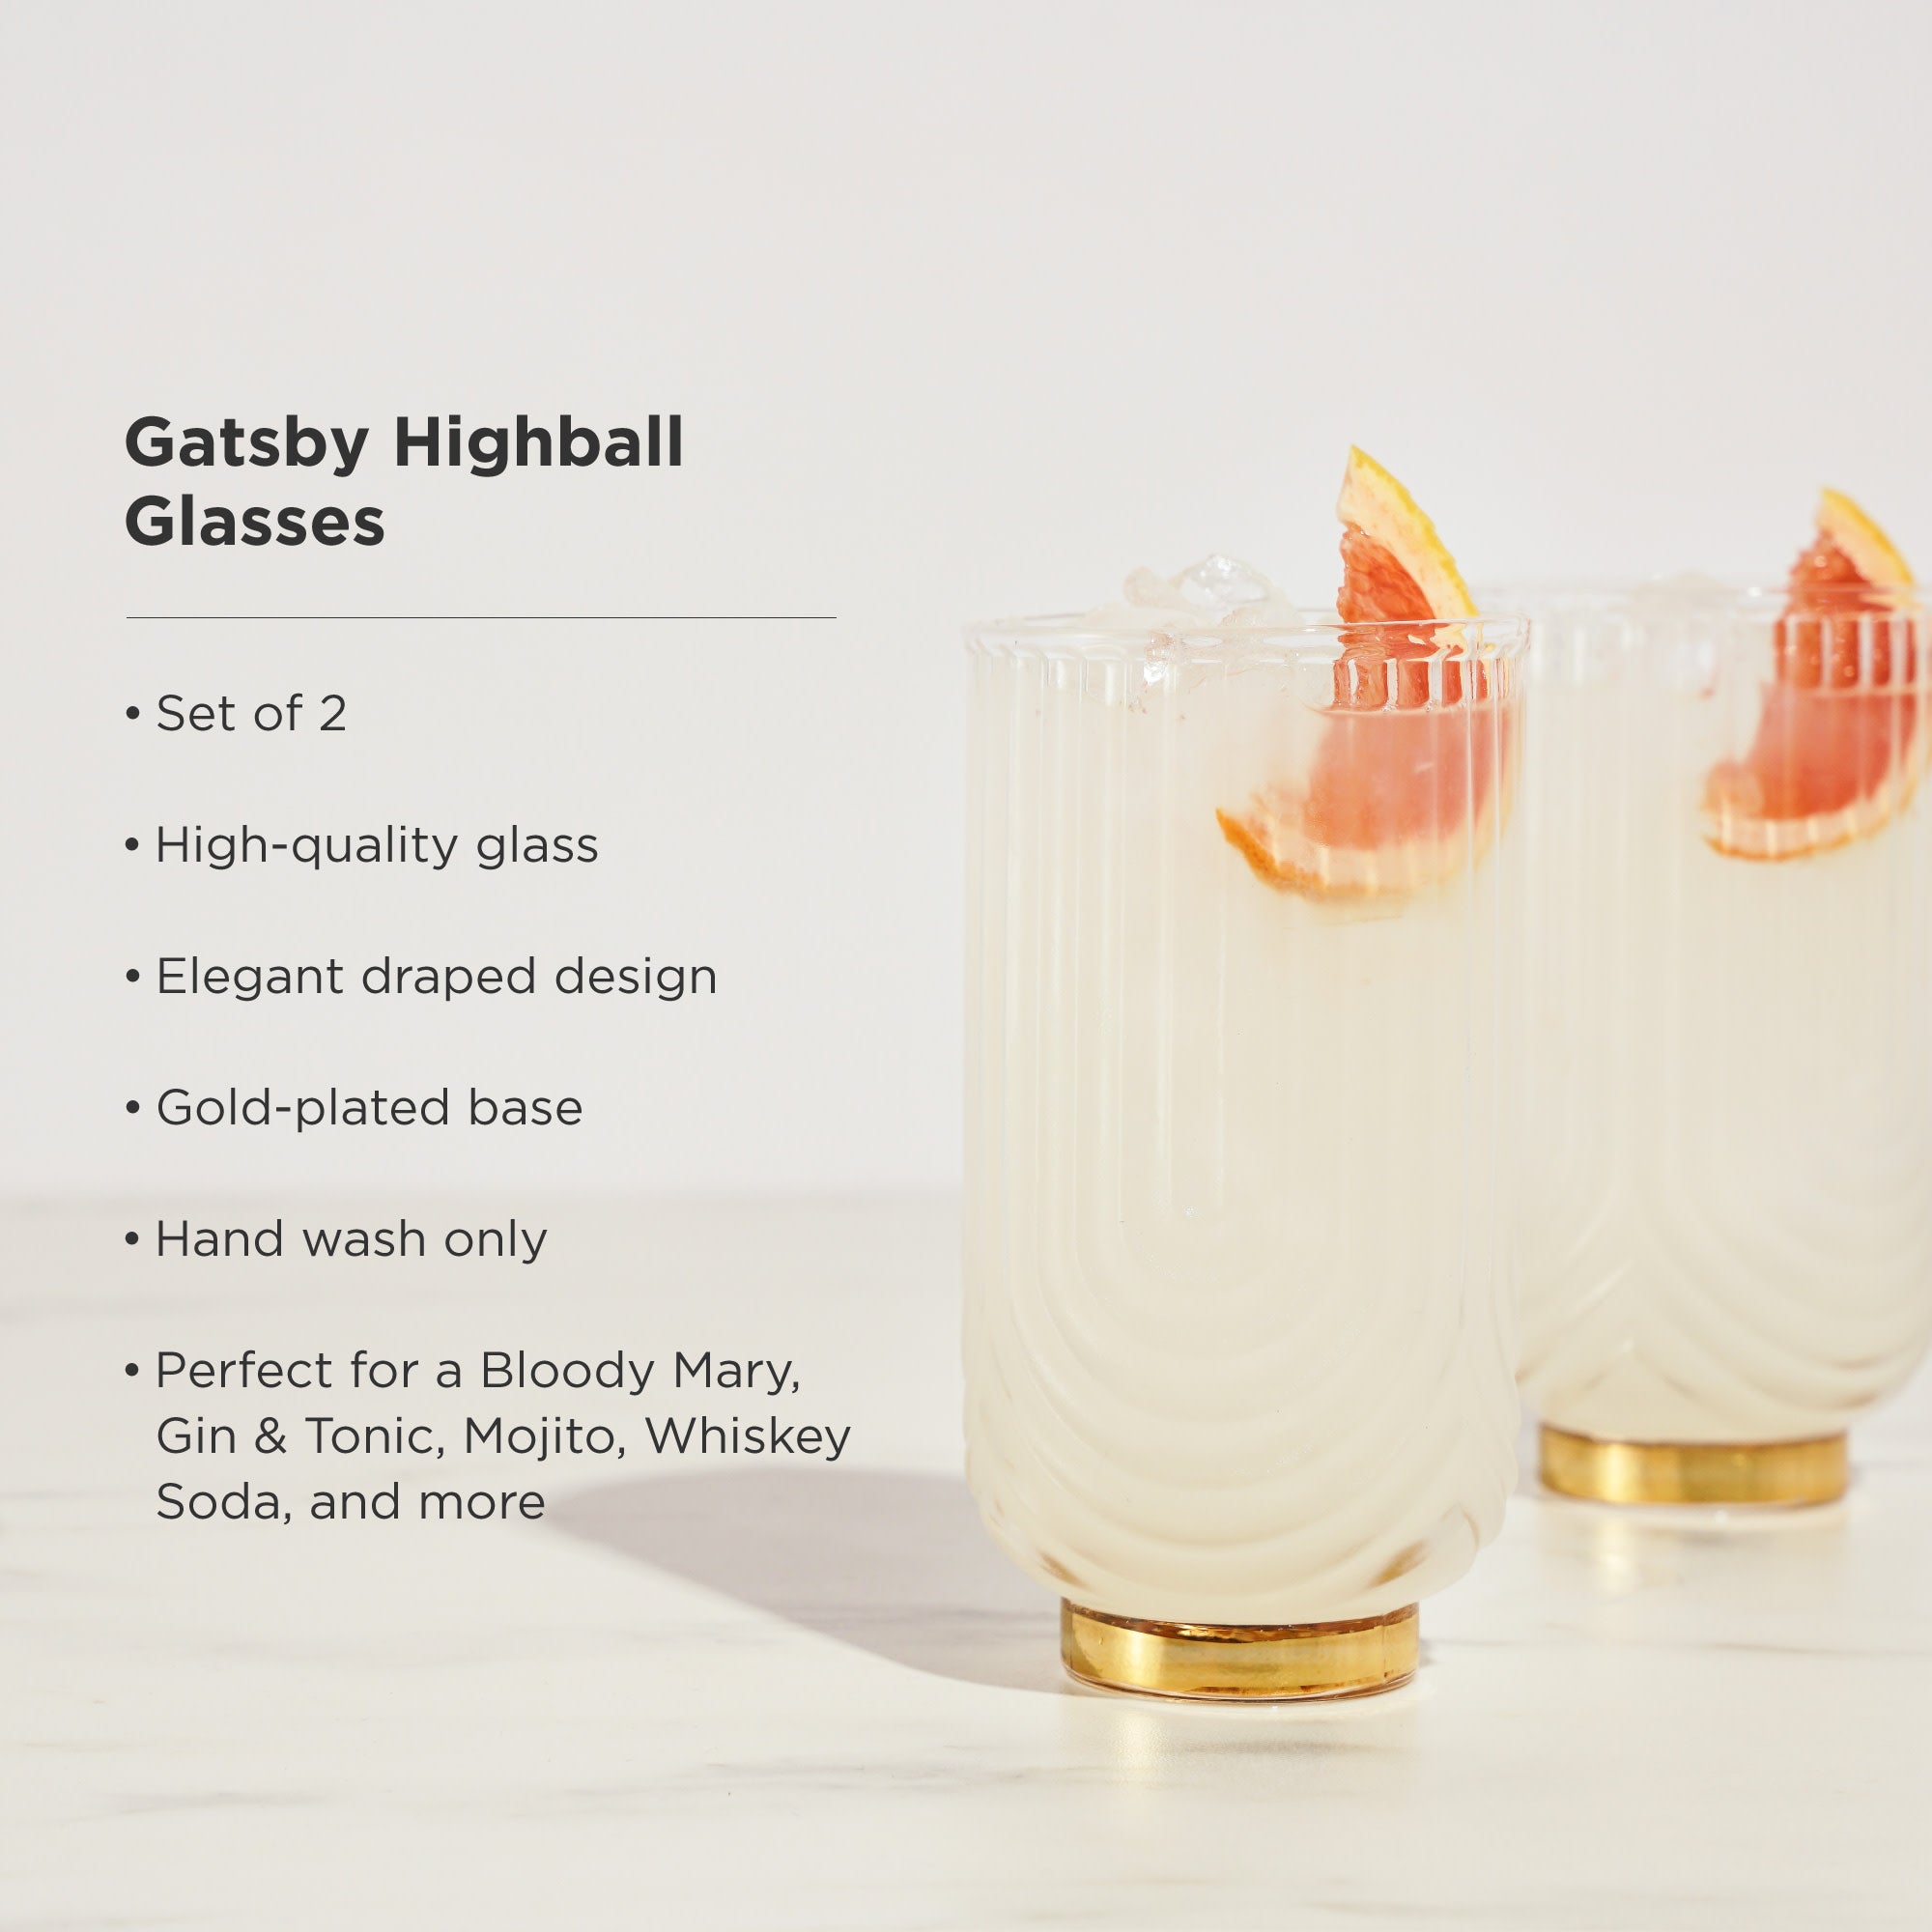 Viski Gatsby Highball Glasses